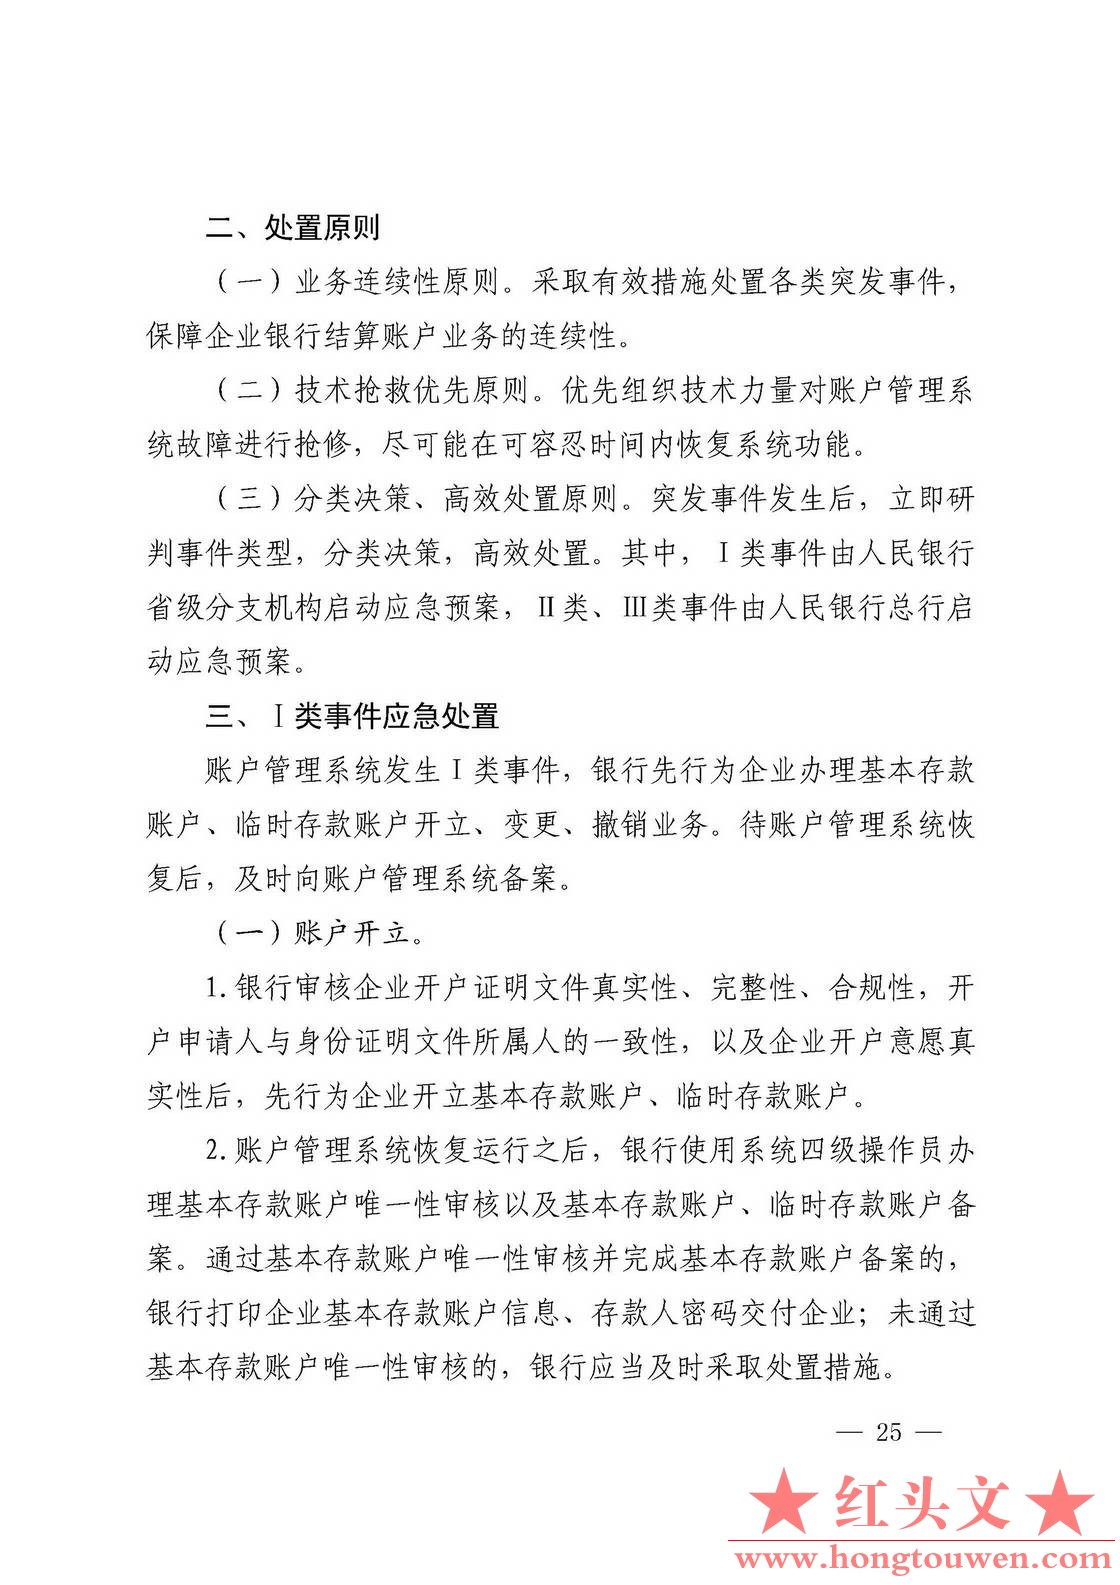 银发[2019]41号-中国人民银行关于取消企业银行账户许可的通知_页面_25.jpg.jpg